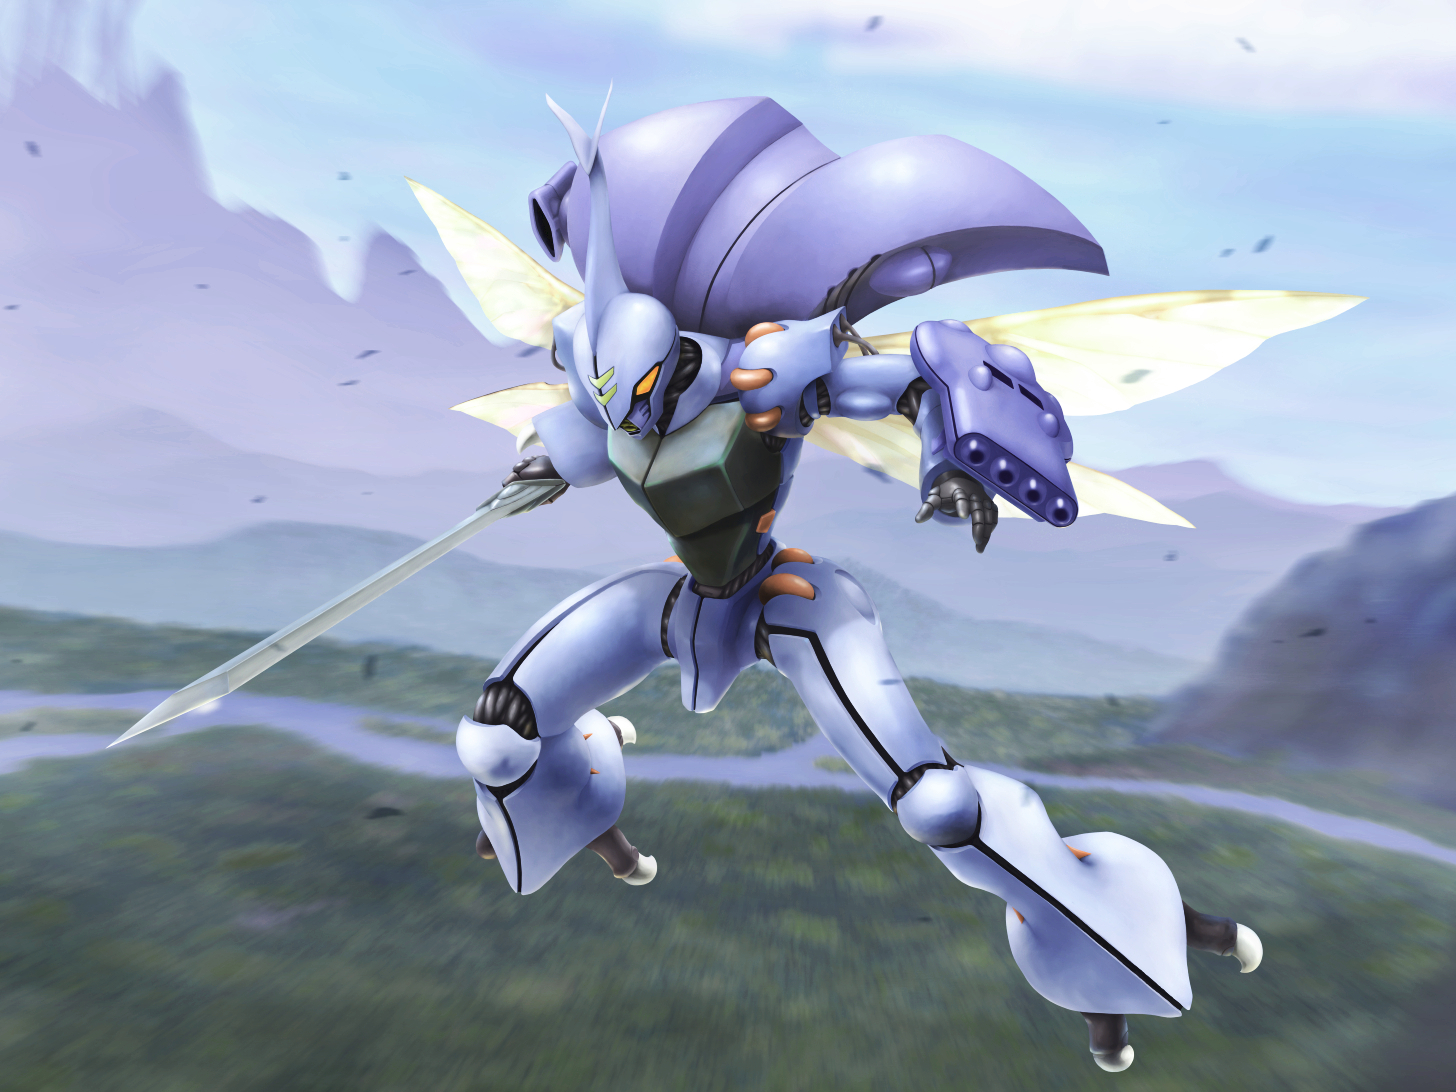 Anime 1456x1092 anime mechs Aura Battler Dunbine Dunbine Super Robot Taisen artwork digital art fan art